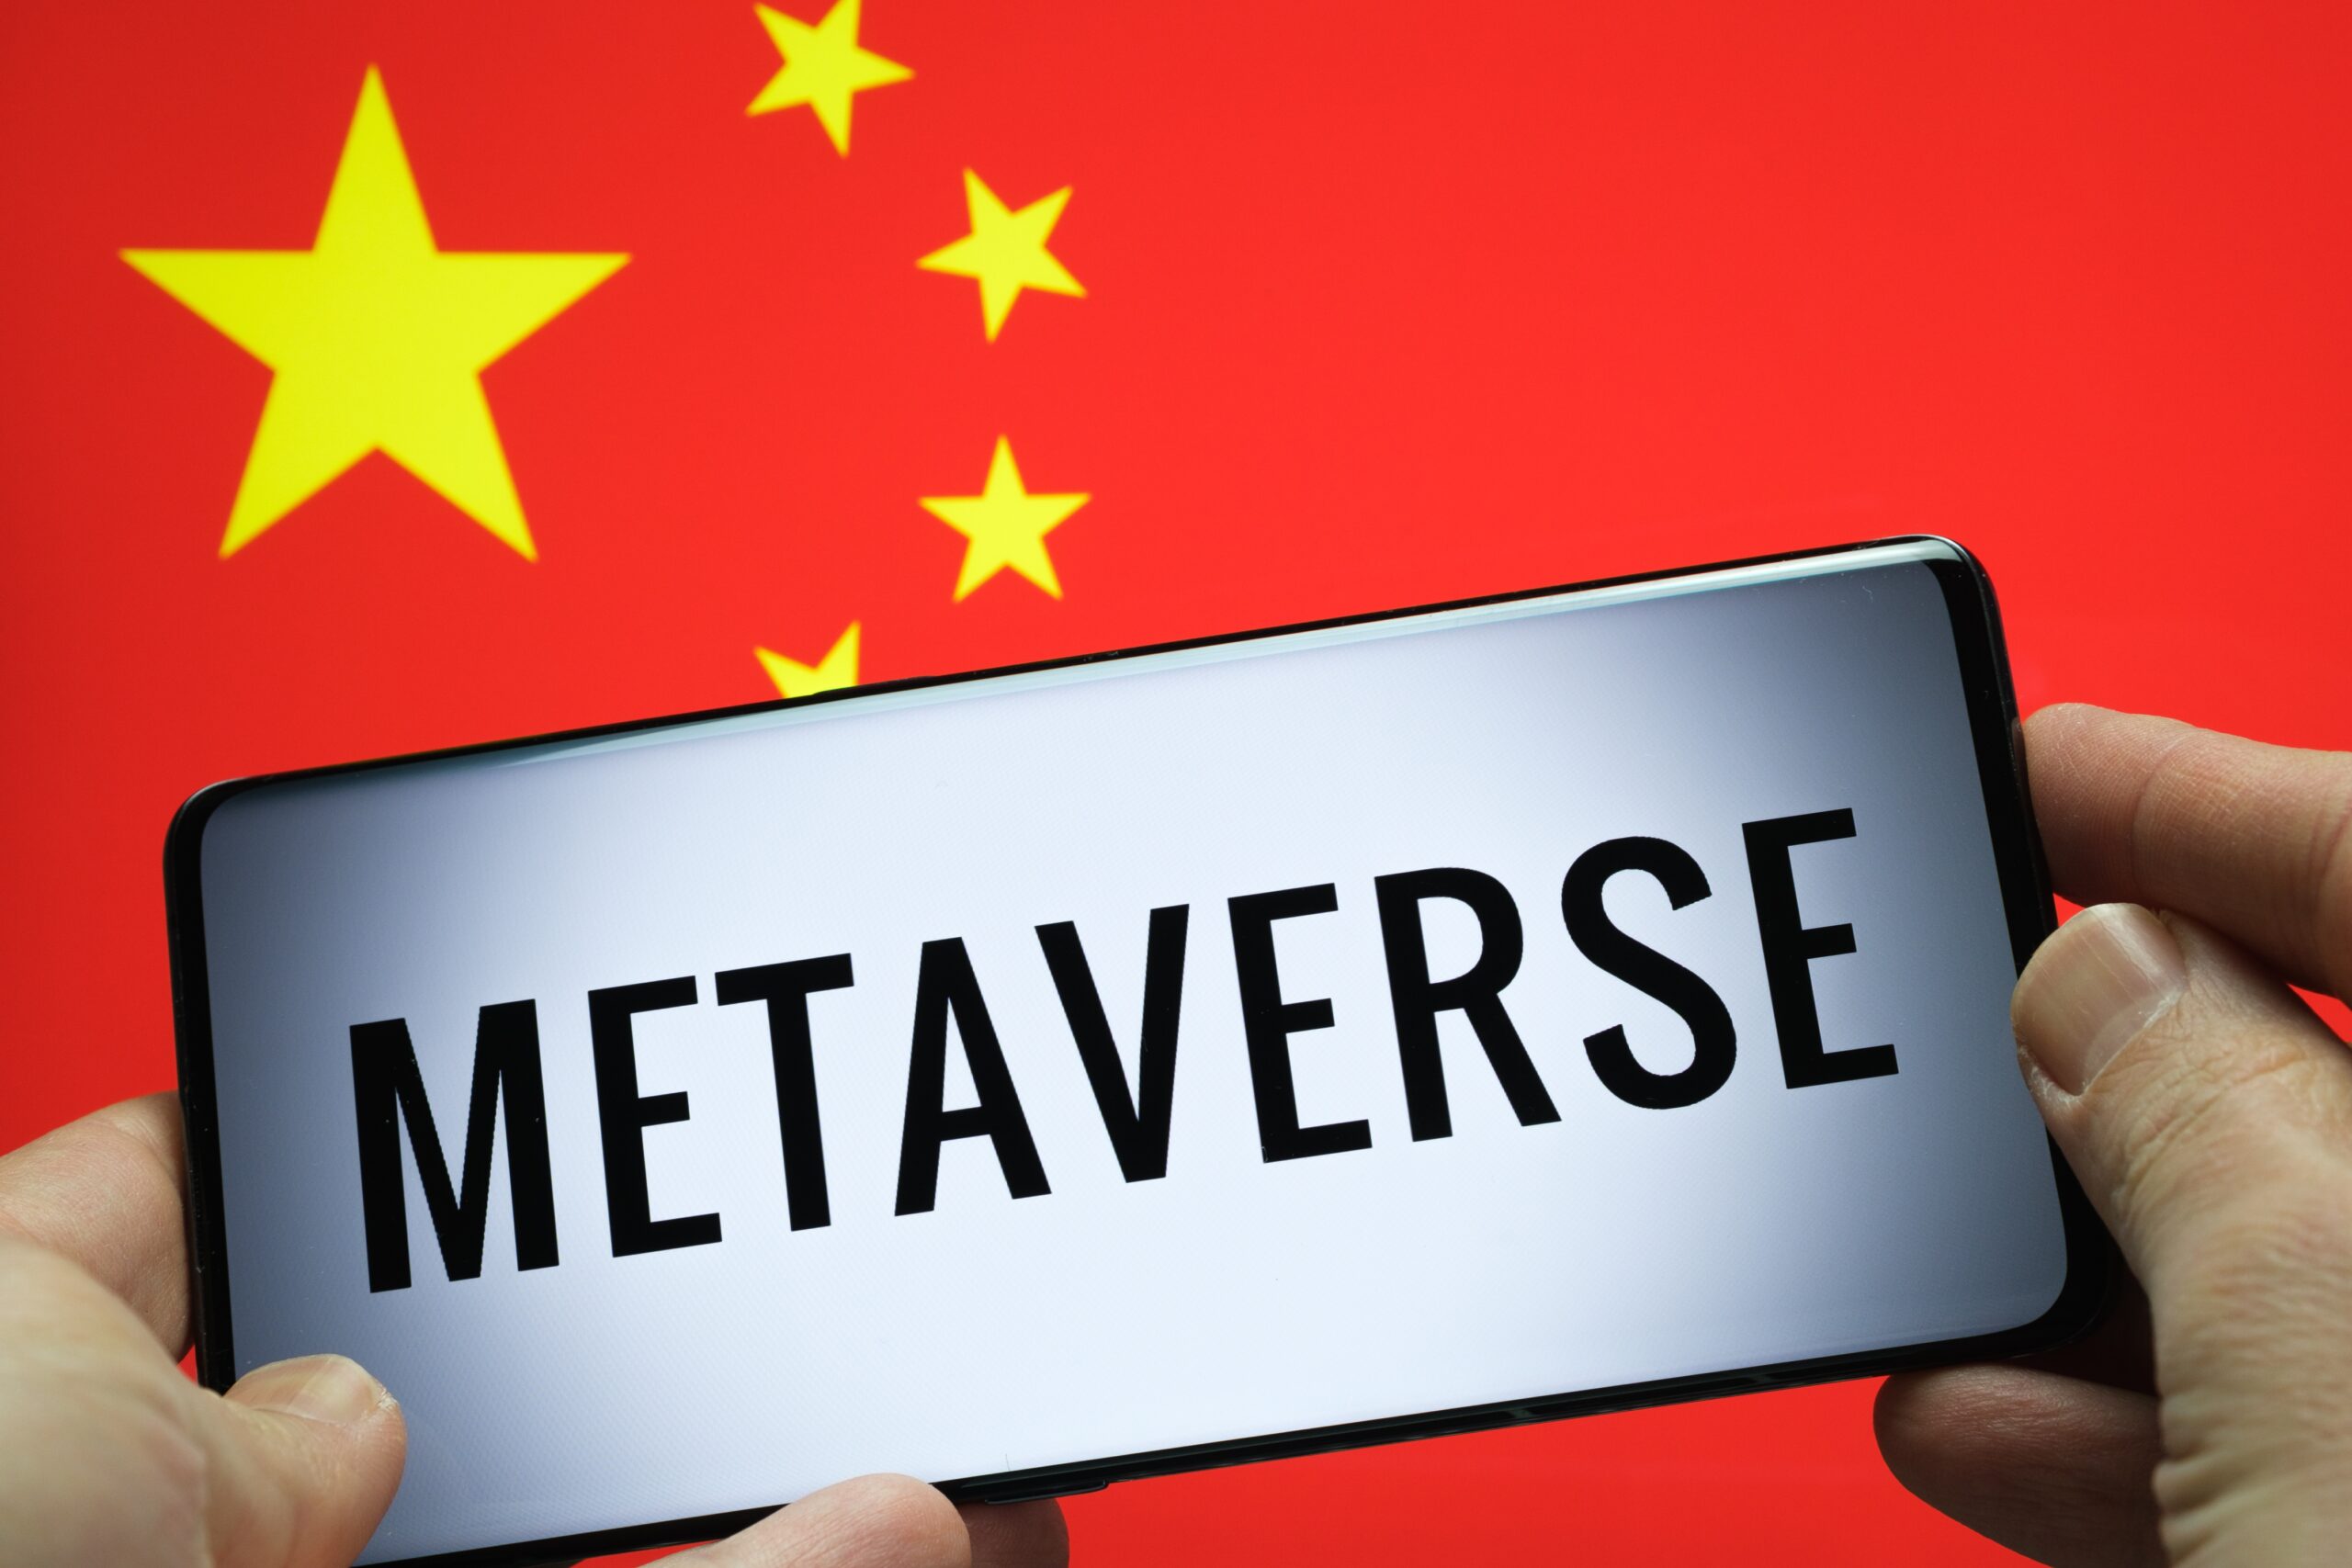 Η επαρχία Shandong της Κίνας με φιλόδοξη ανάπτυξη 20.5 δισεκατομμυρίων δολαρίων Metaverse